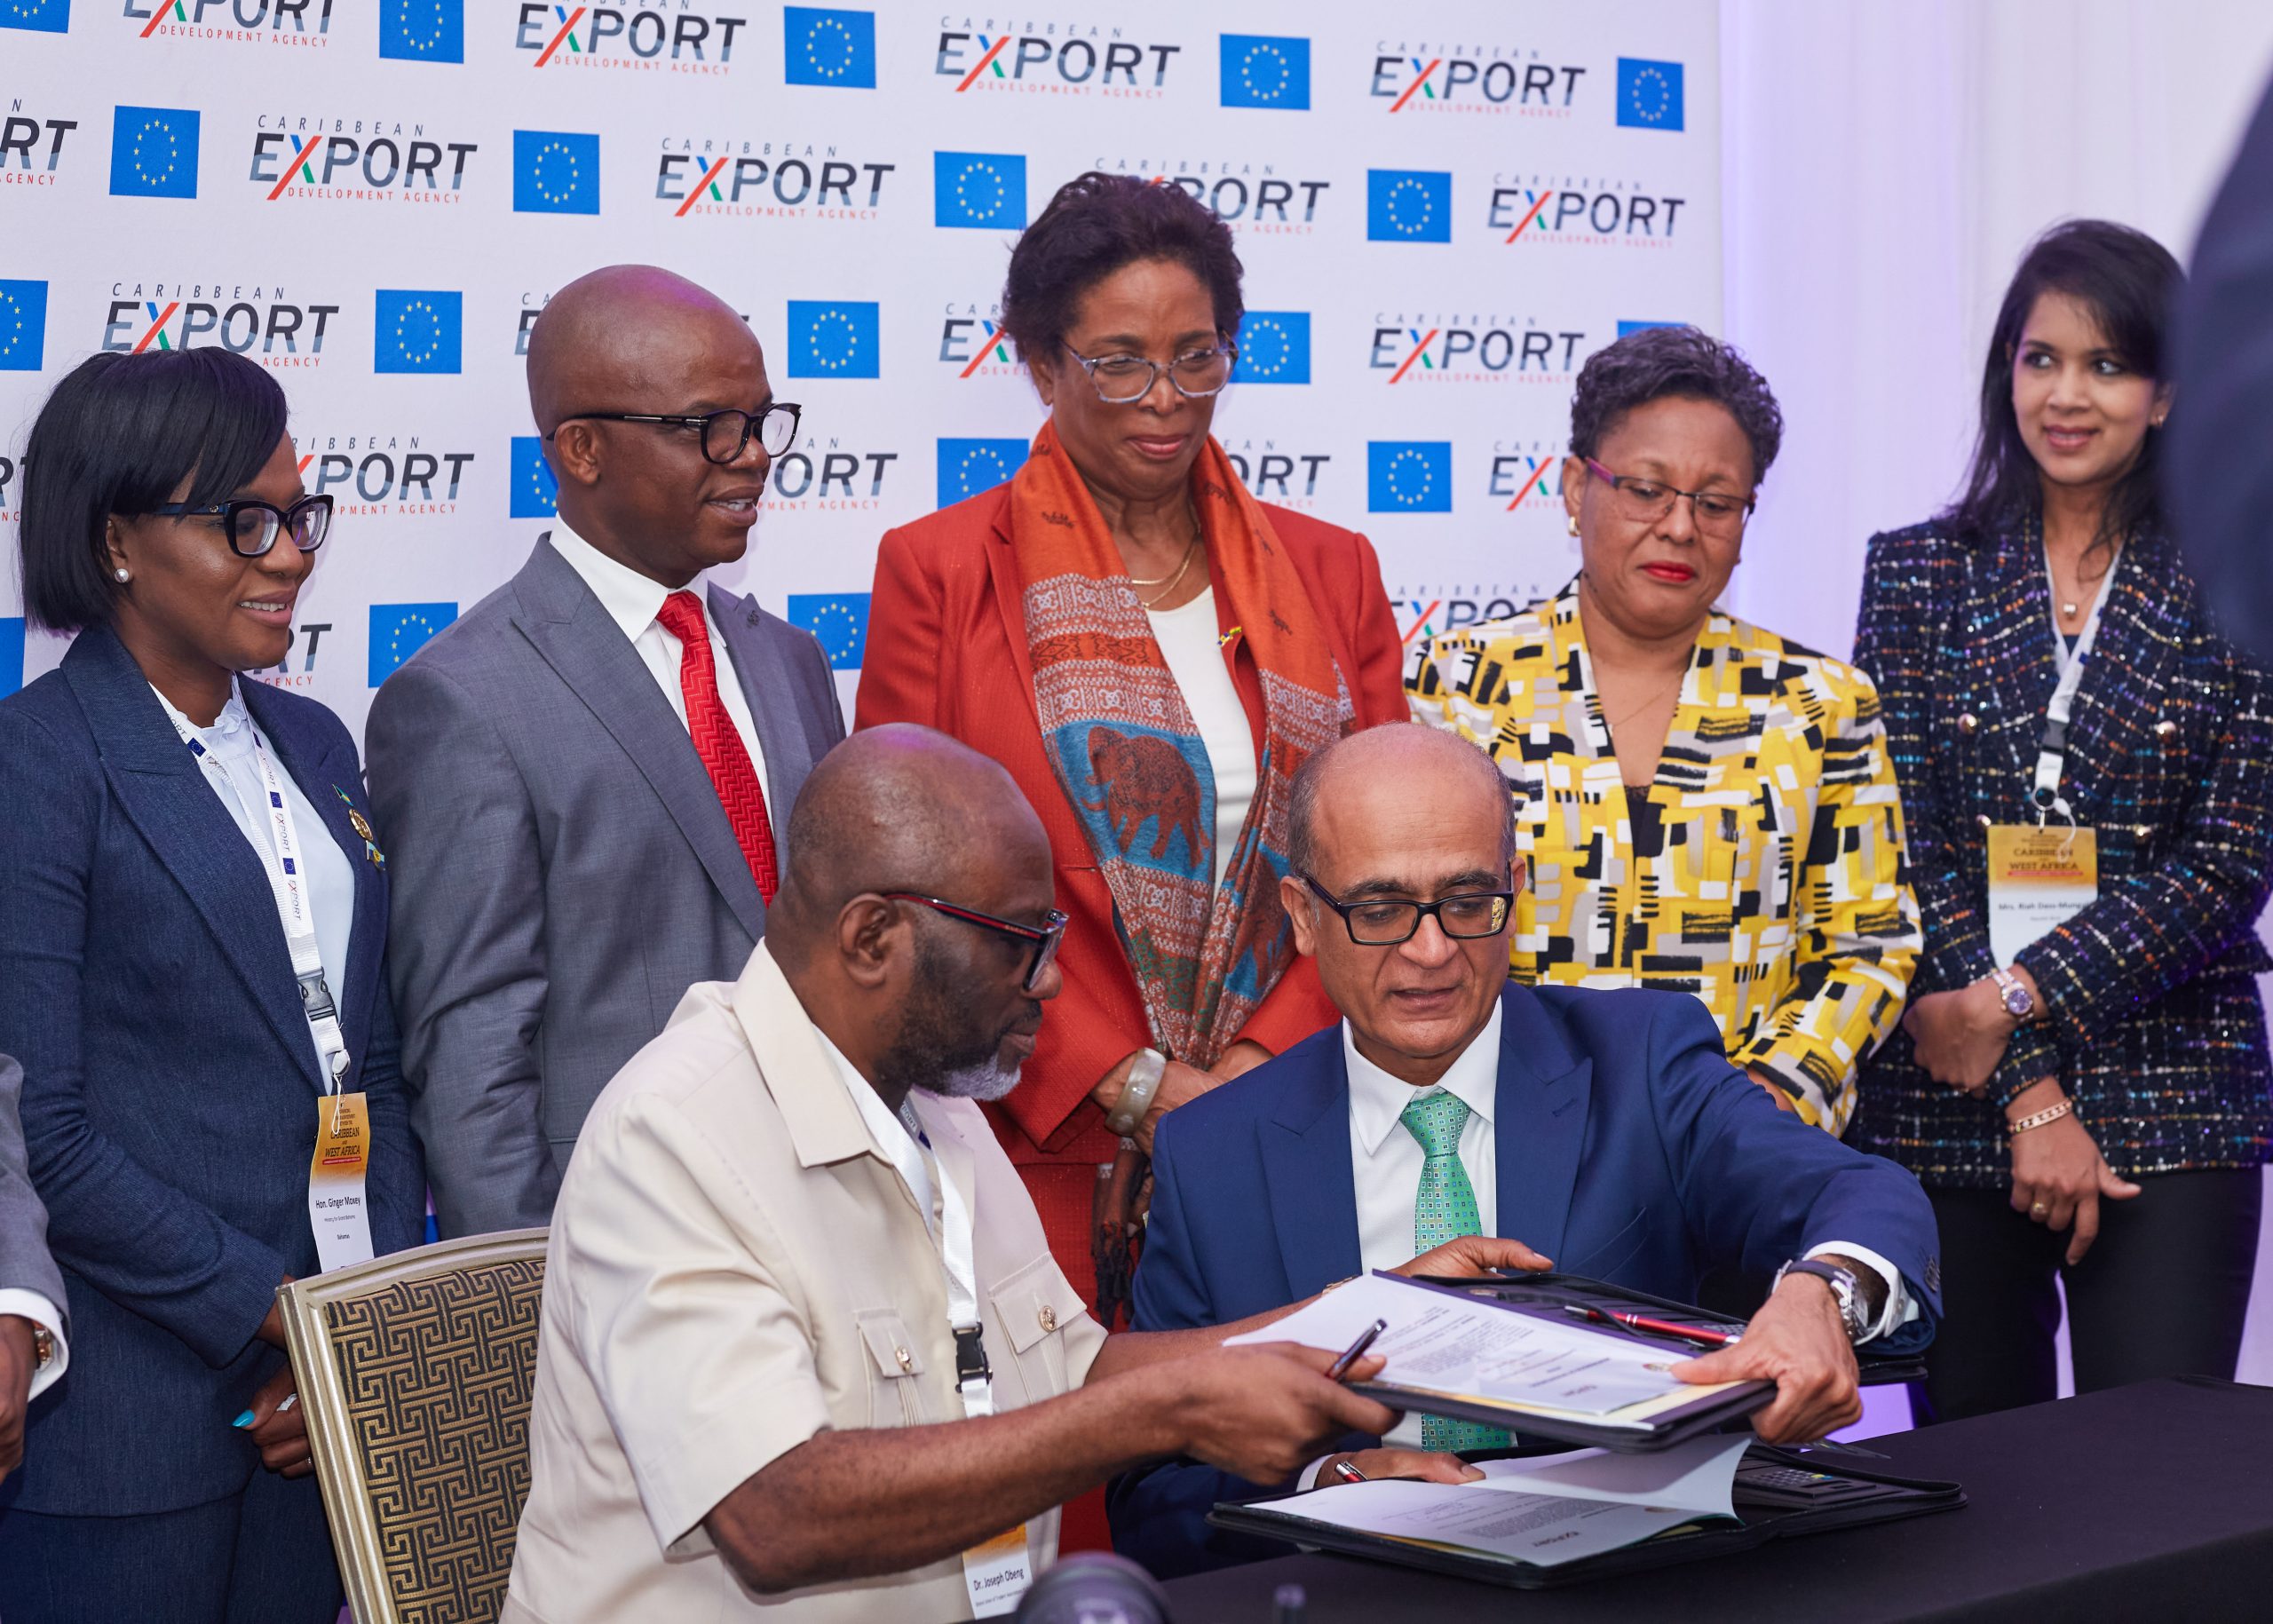 Caribbean Export firma tres memorandos de acuerdo para apoyar el aumento del comercio entre el Caribe y Ghana